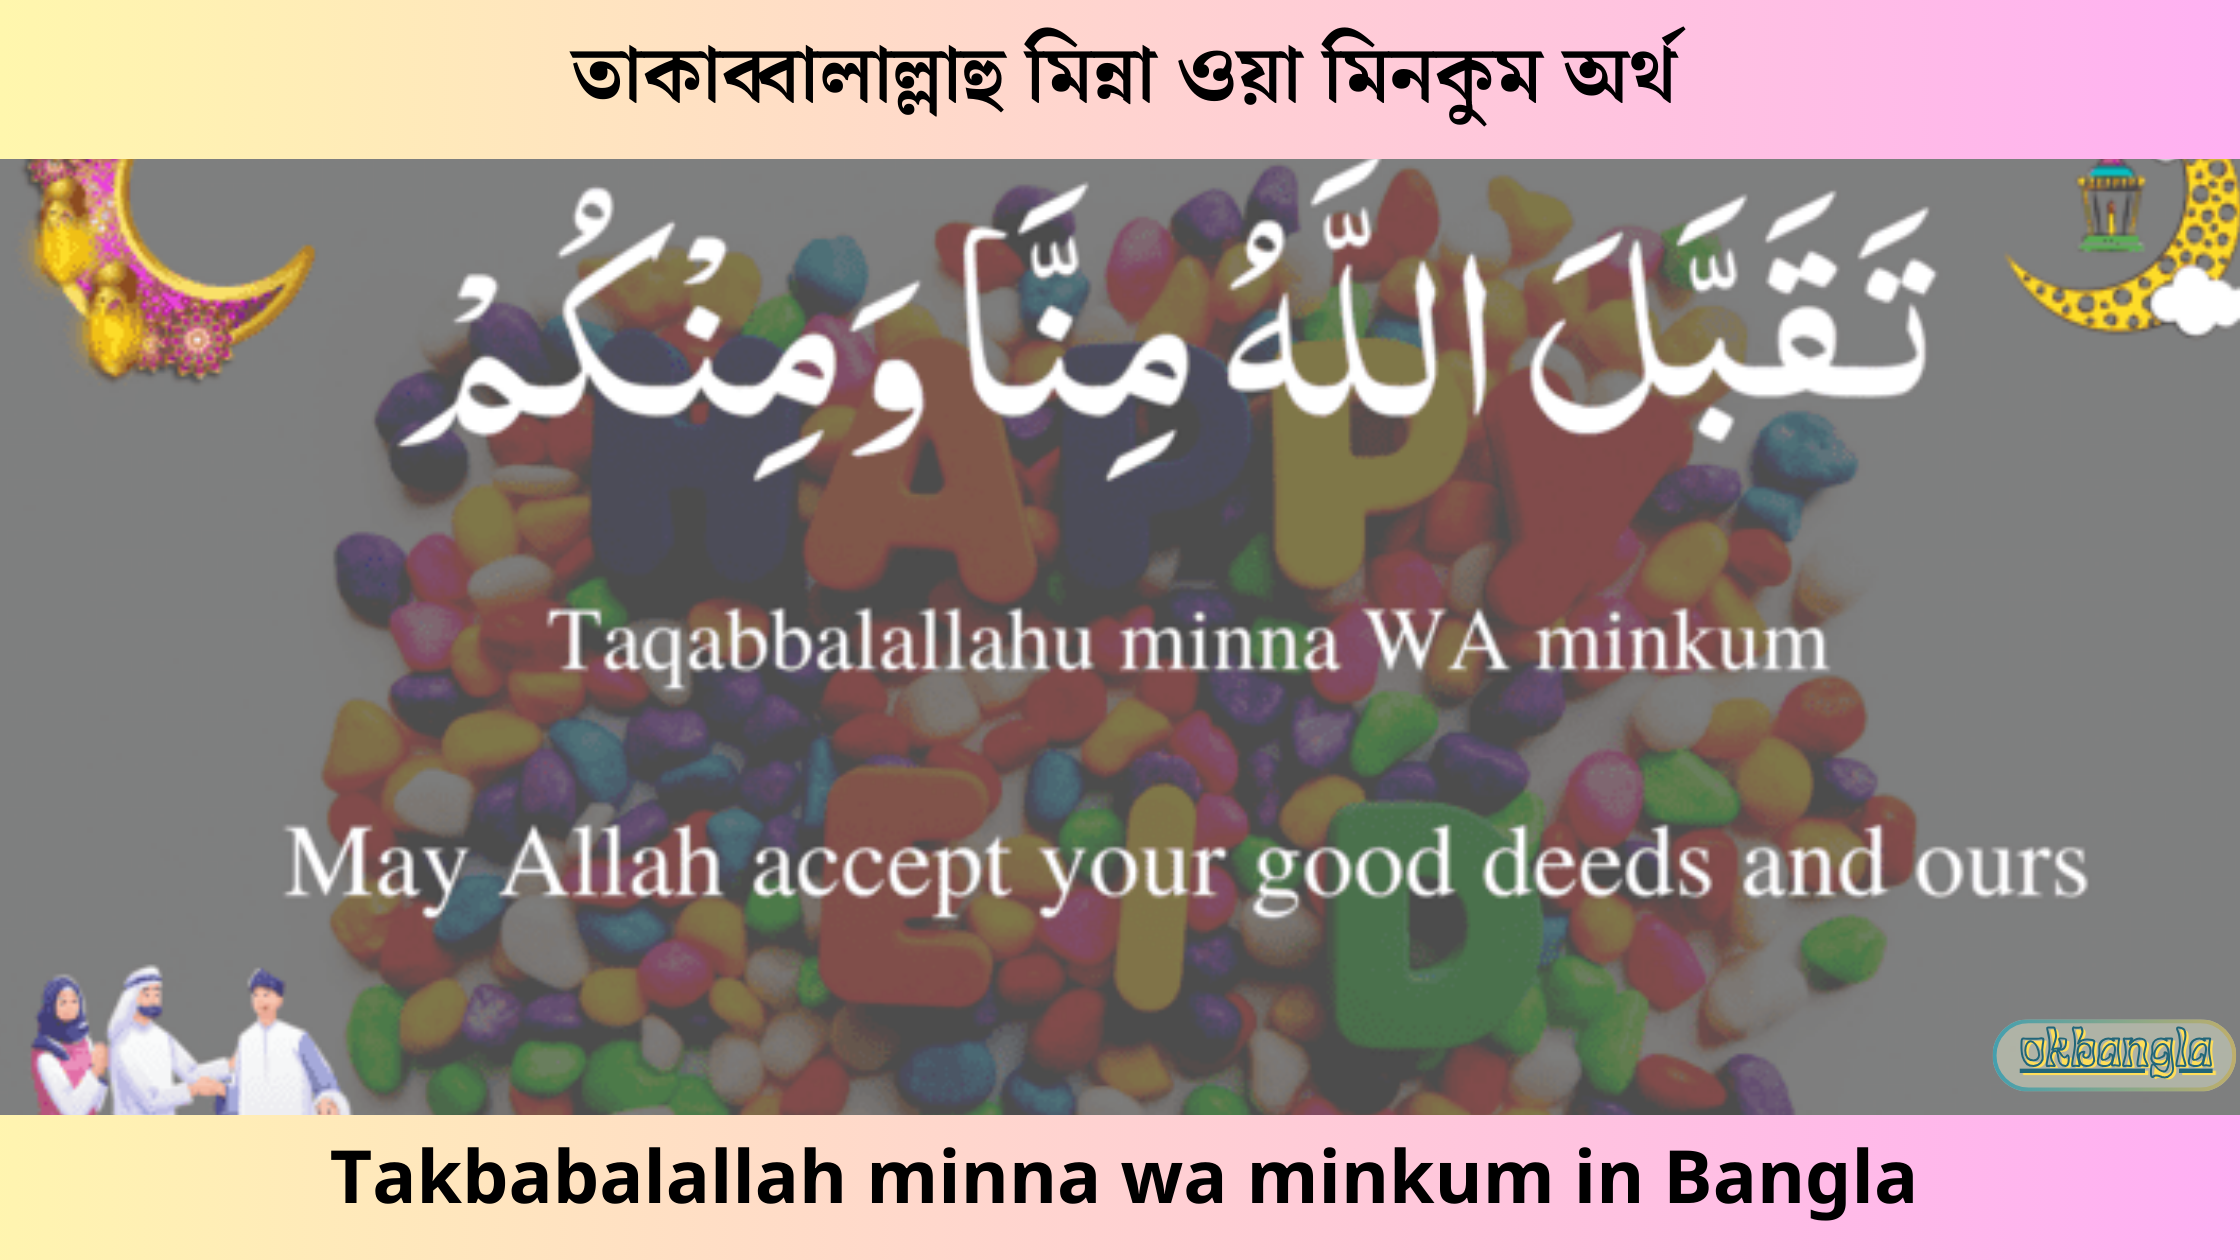 তাকাব্বালাল্লাহু মিন্না ওয়া মিনকুম অর্থ, Takbabalallah minna wa minkum in Bangla